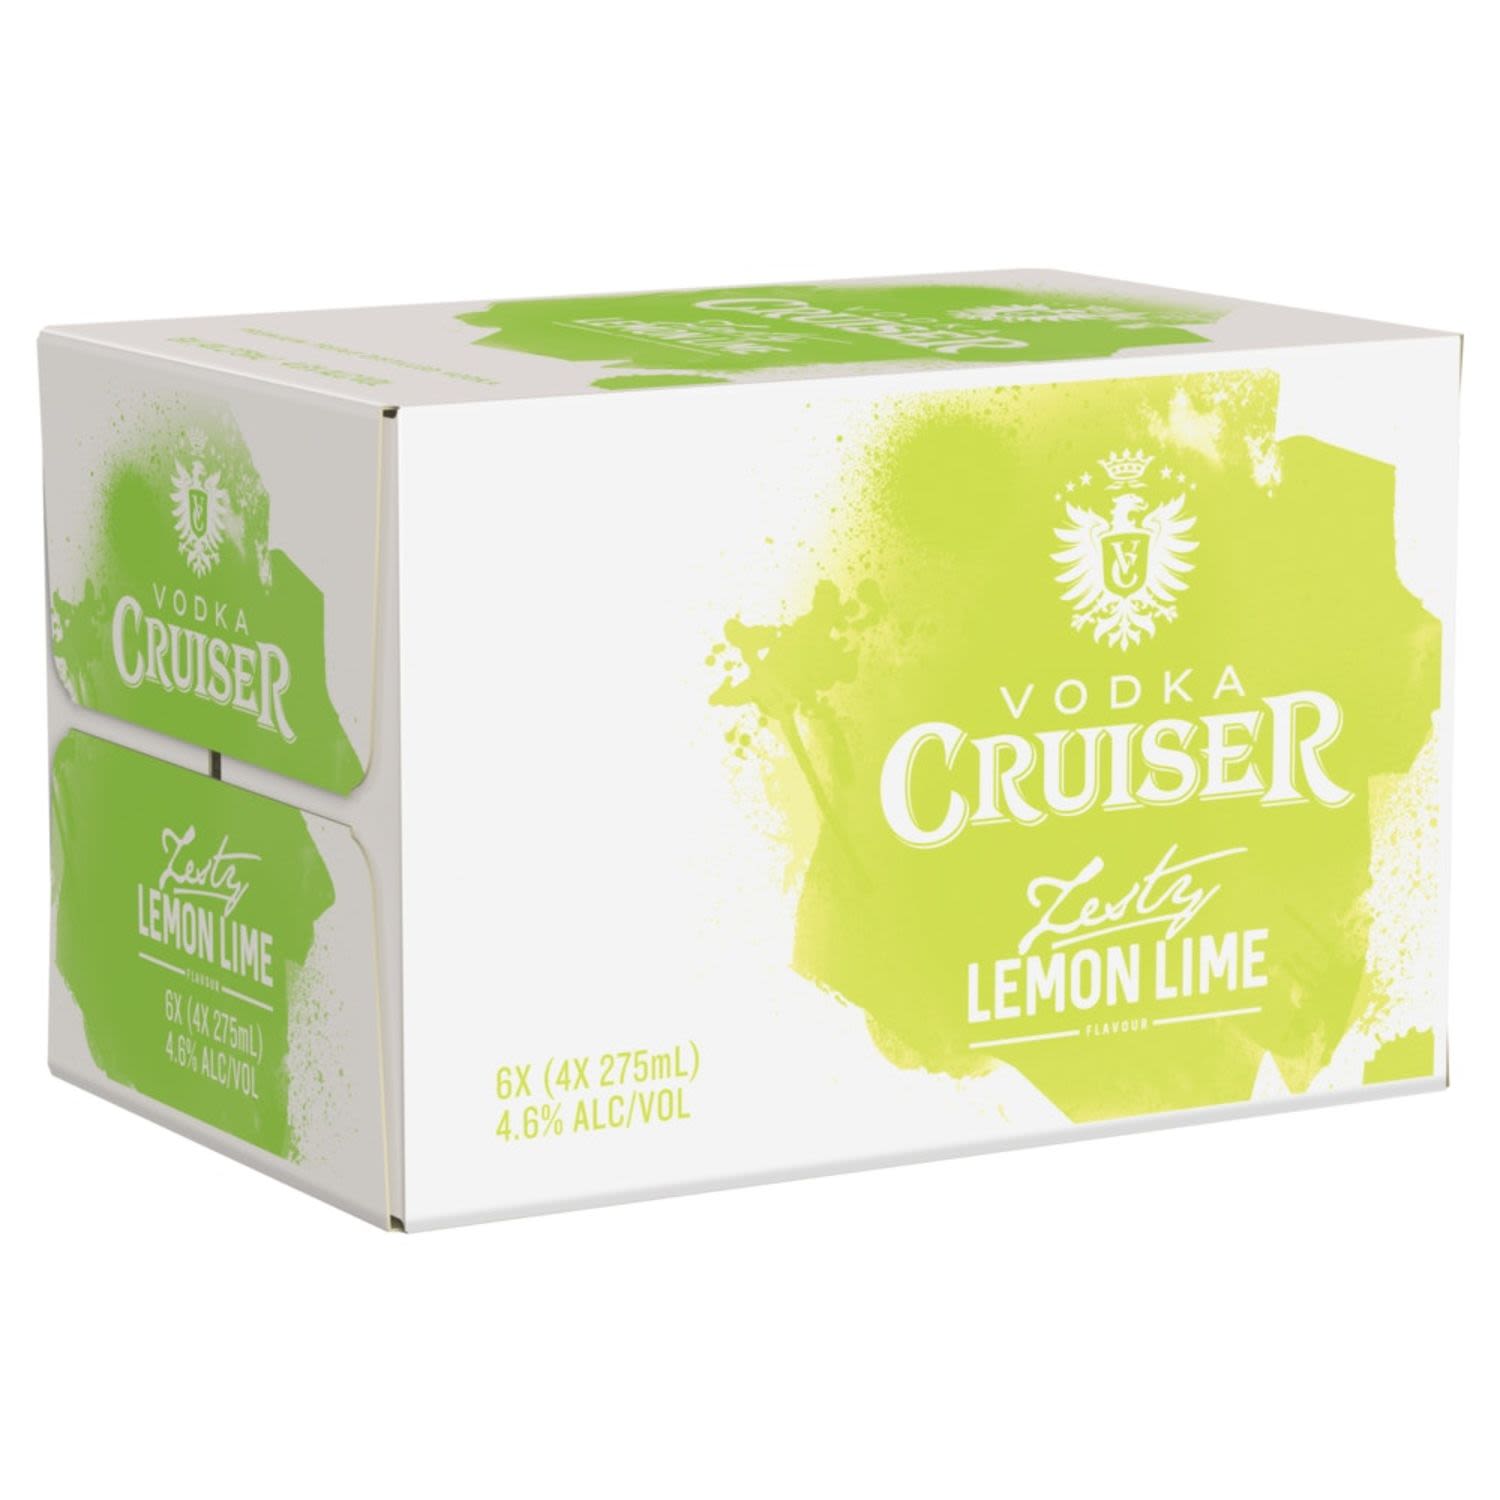 Vodka Cruiser Zesty Lemon Lime Bottle 275mL 24 Pack